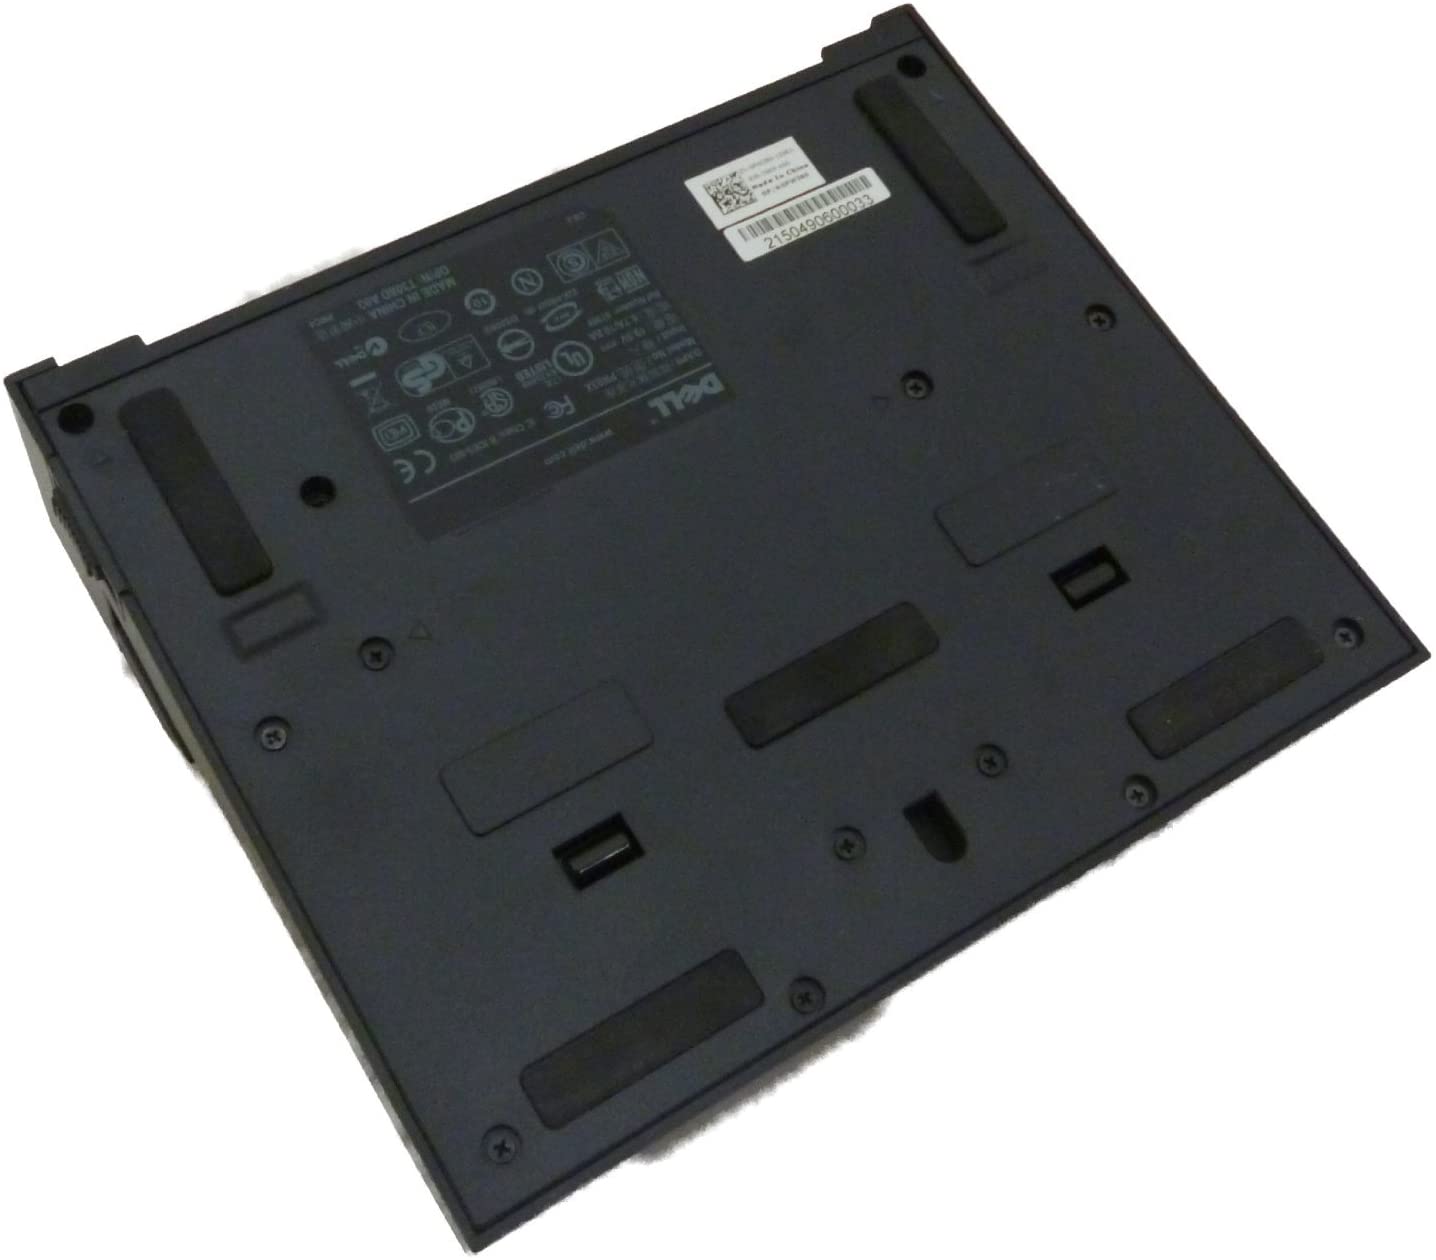 Dell - Port Replicator E5570 (PR03X) Docking Station per notebook Latitude E5450 E5540 E5550 E7440 E7450